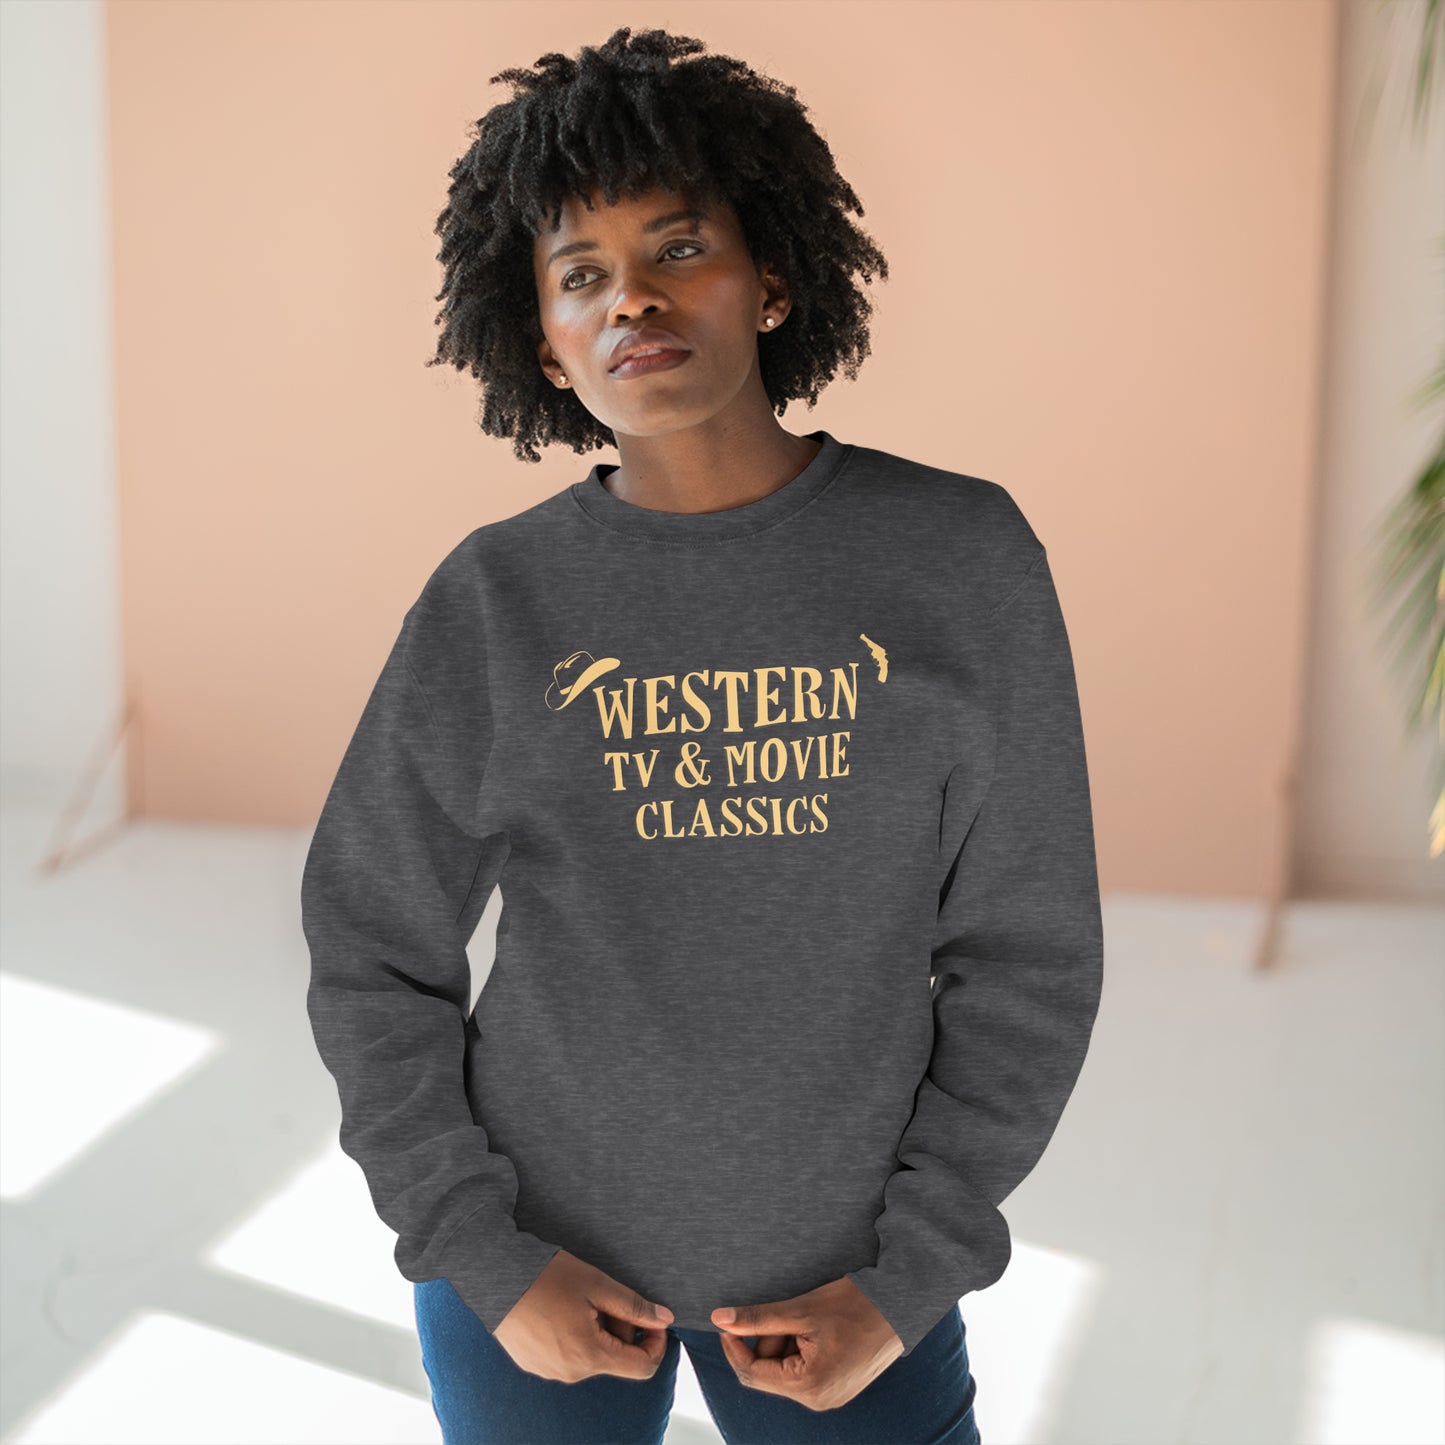 Western TV & Movie Classics - Unisex Premium Crewneck Sweatshirt